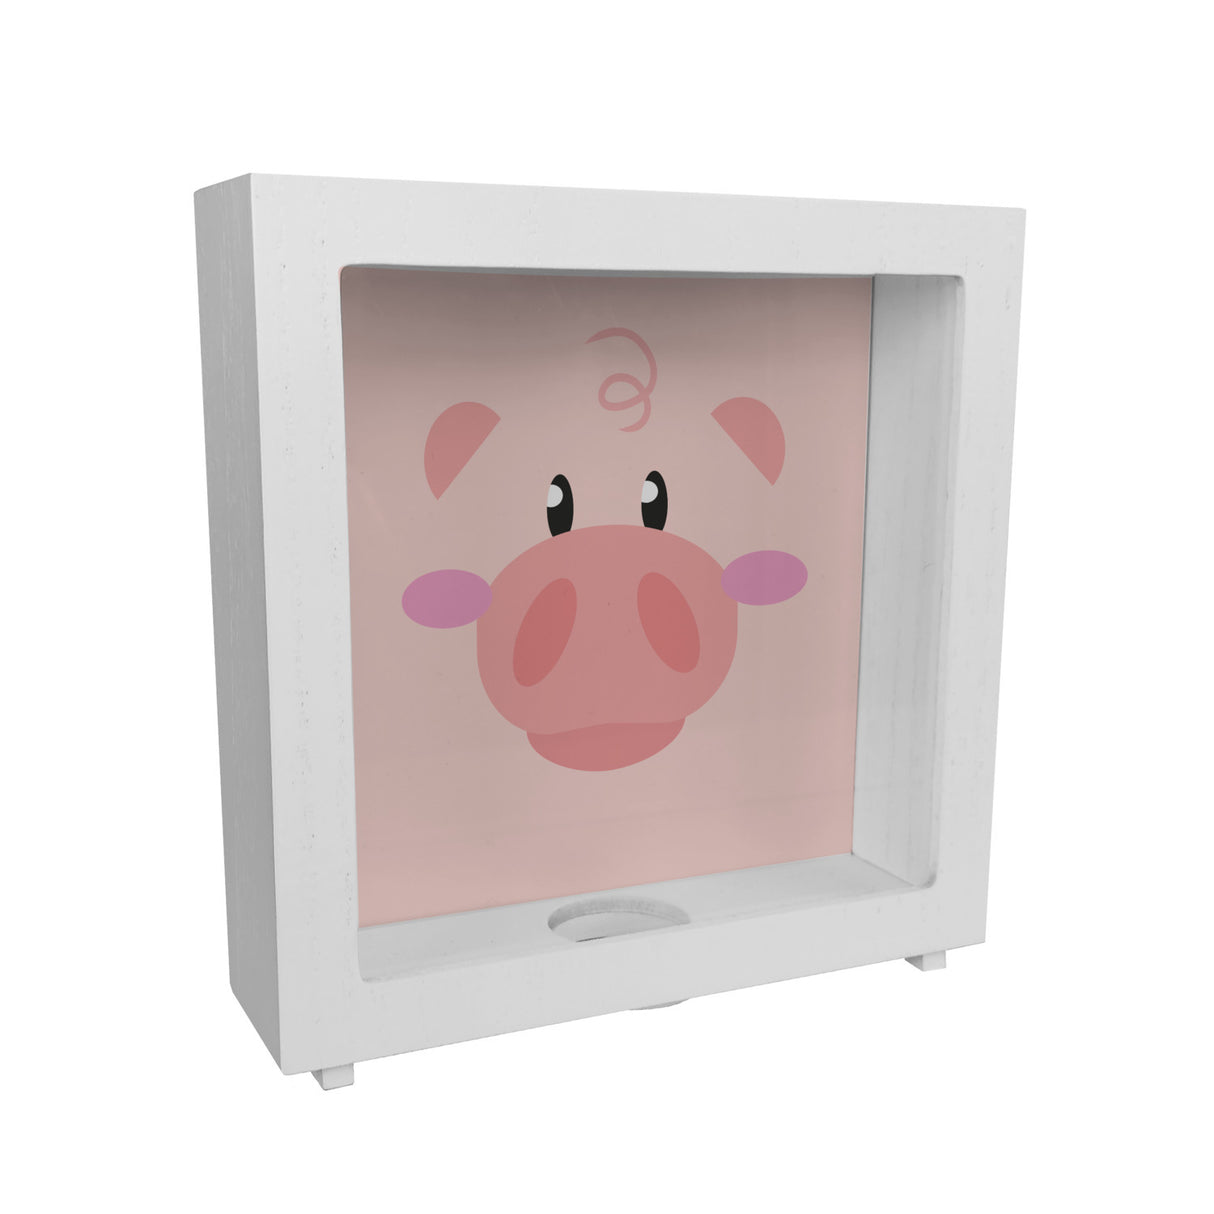 Spardose aus Keramik mit niedlichem Schweine-Gesicht - für kleine Kinder